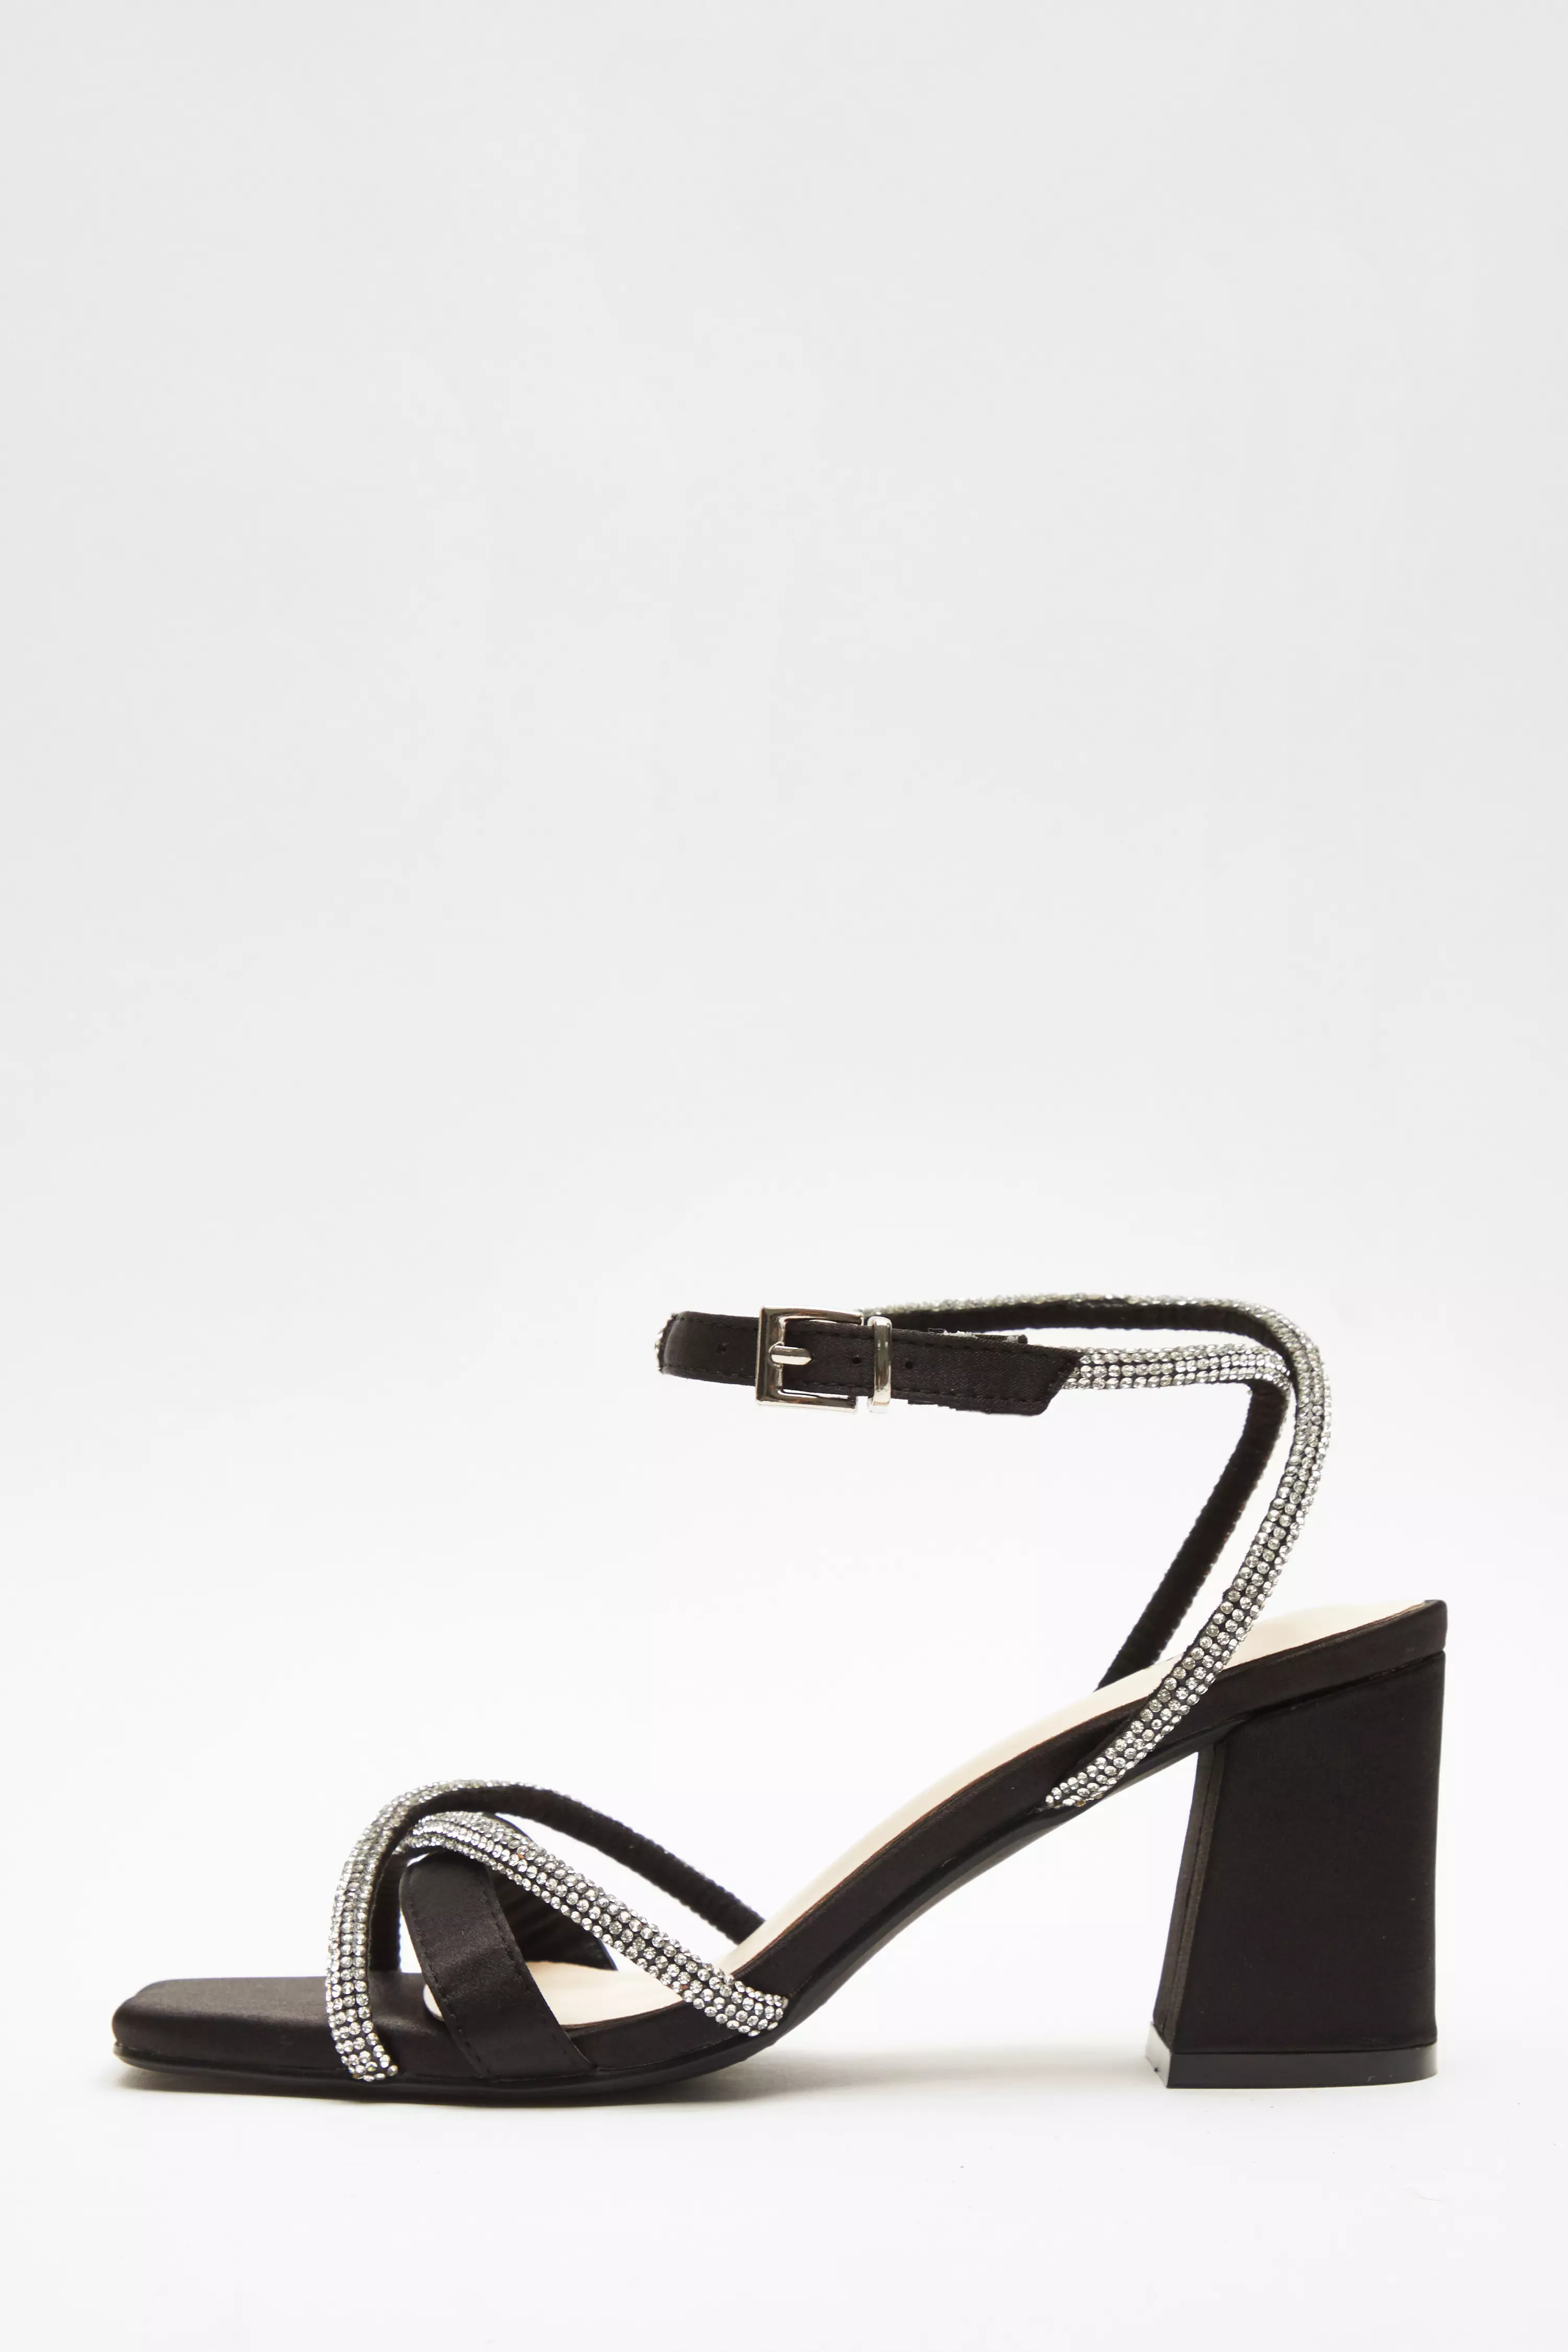 Black Satin Diamante Block Heeled Sandals - QUIZ Clothing